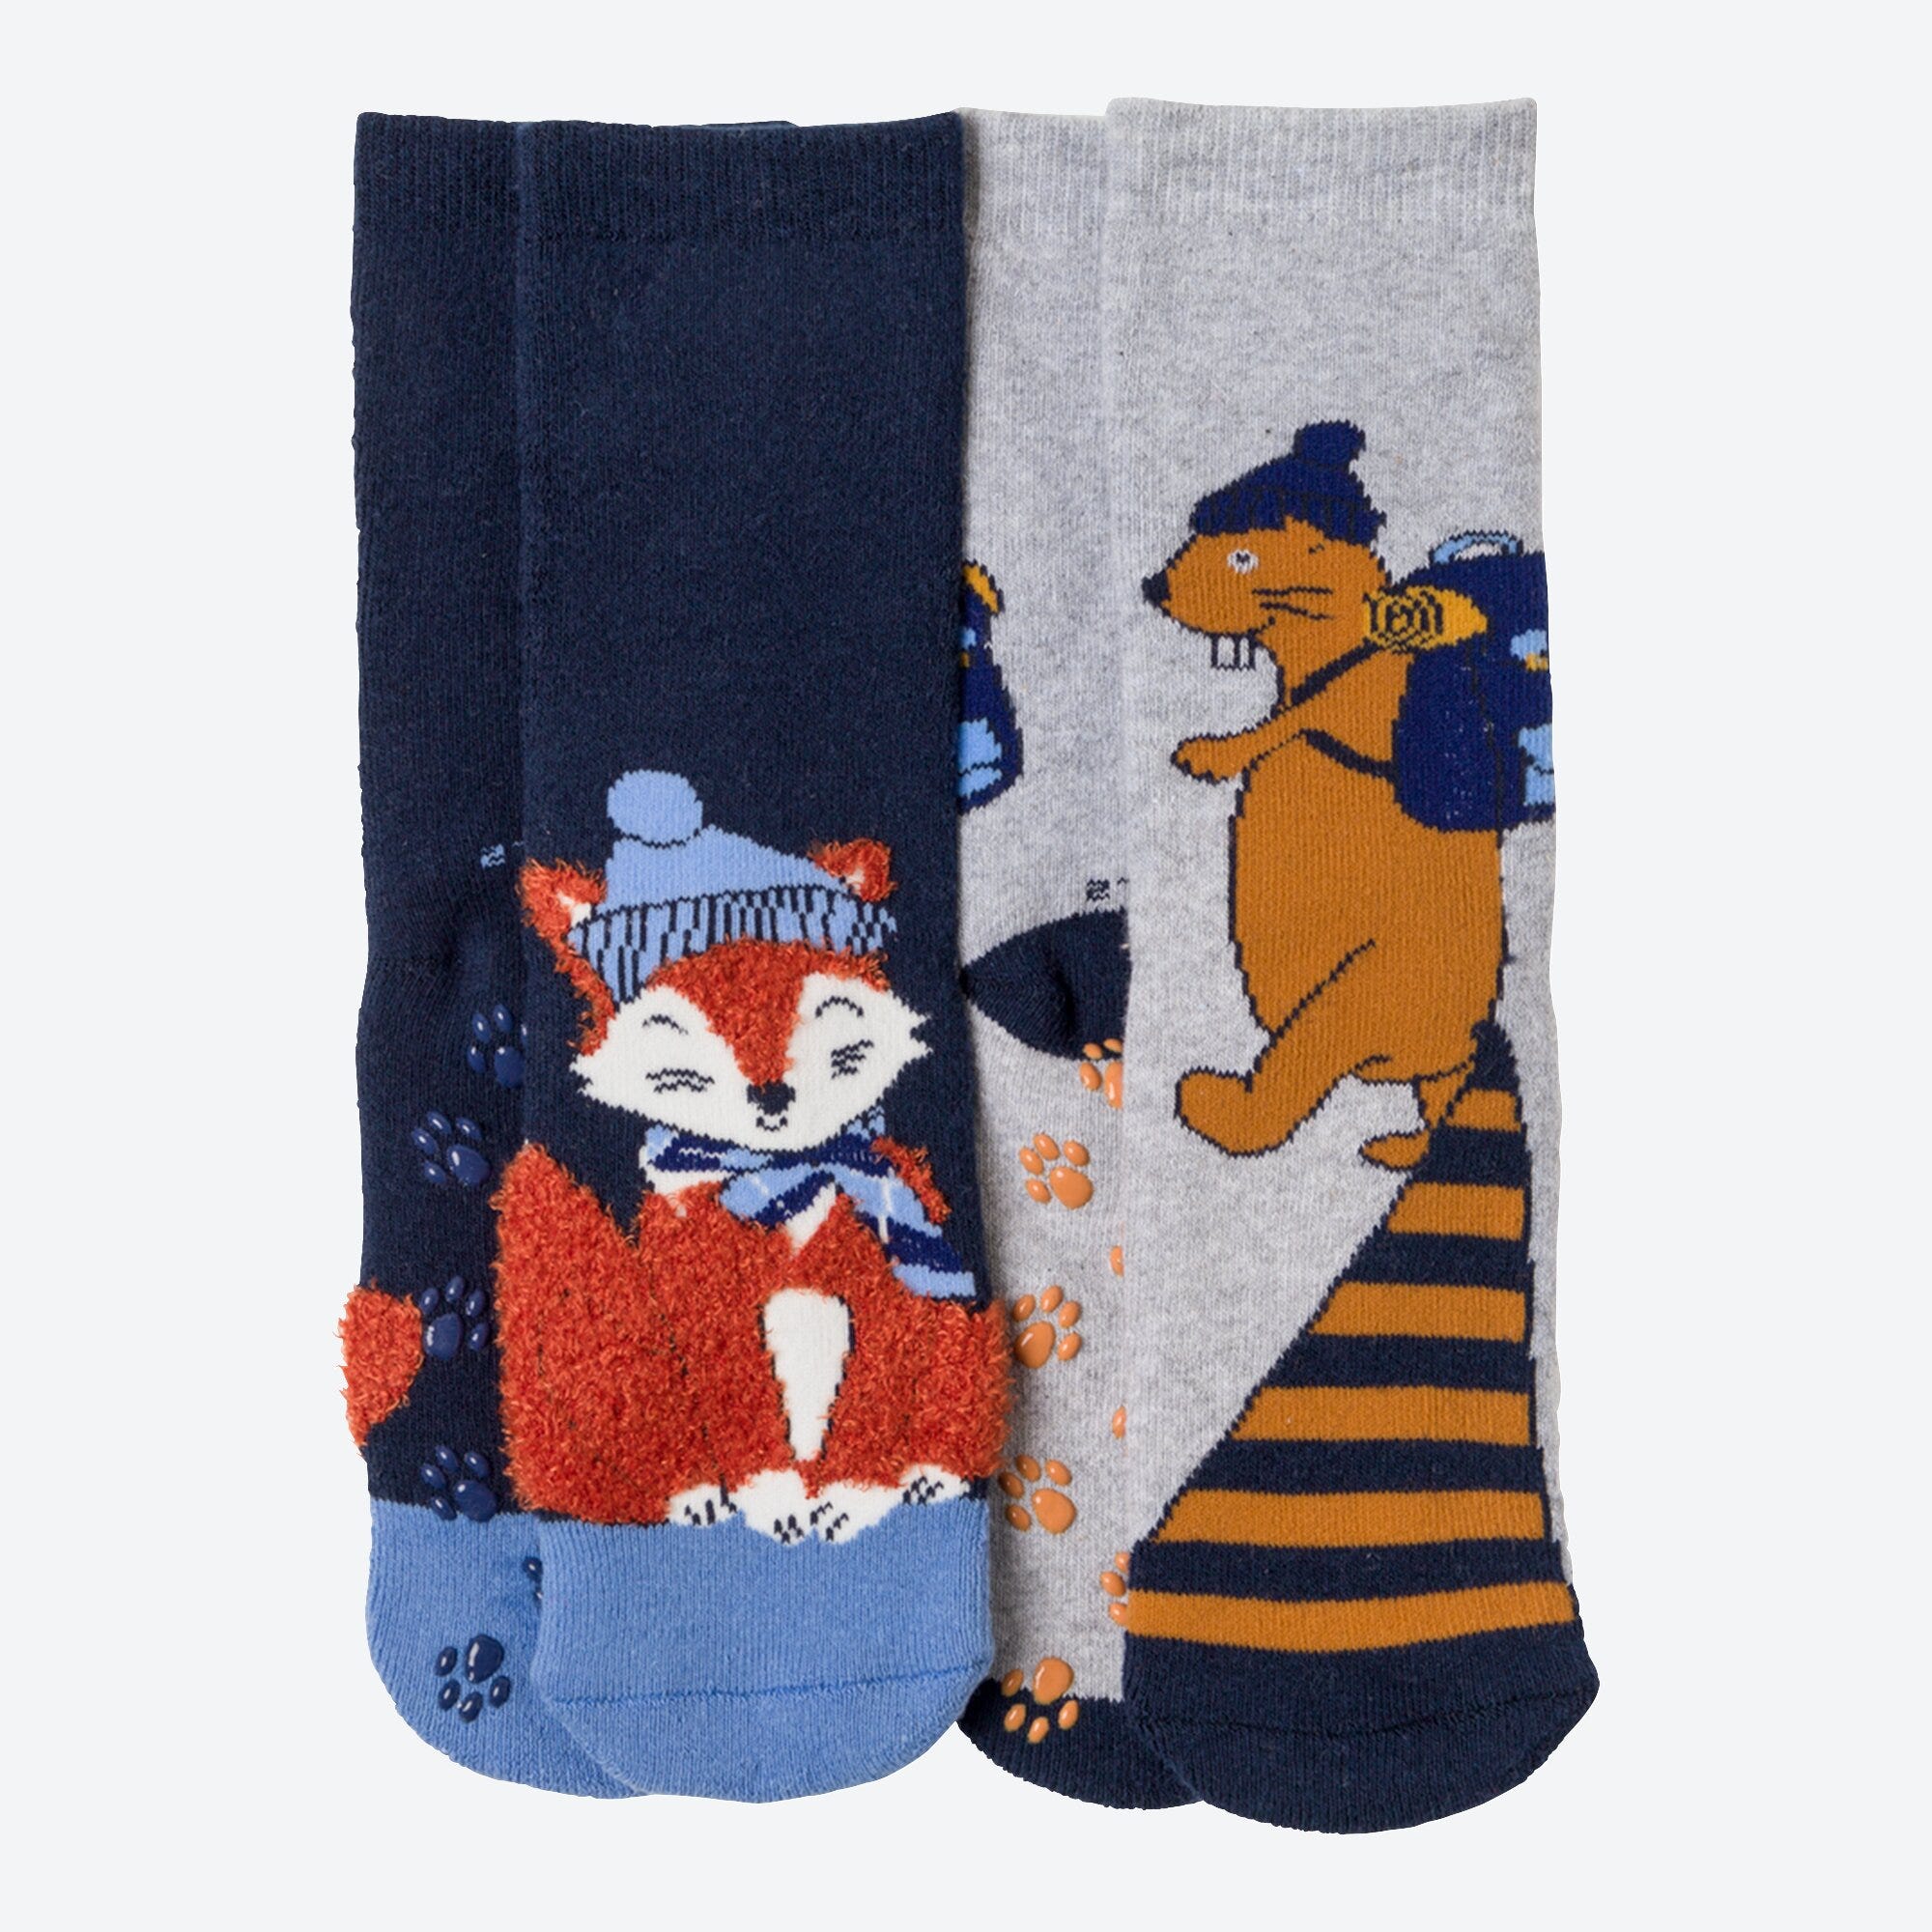 Kinder-Jungen-ABS-Socken mit Muster, 2er-Pack